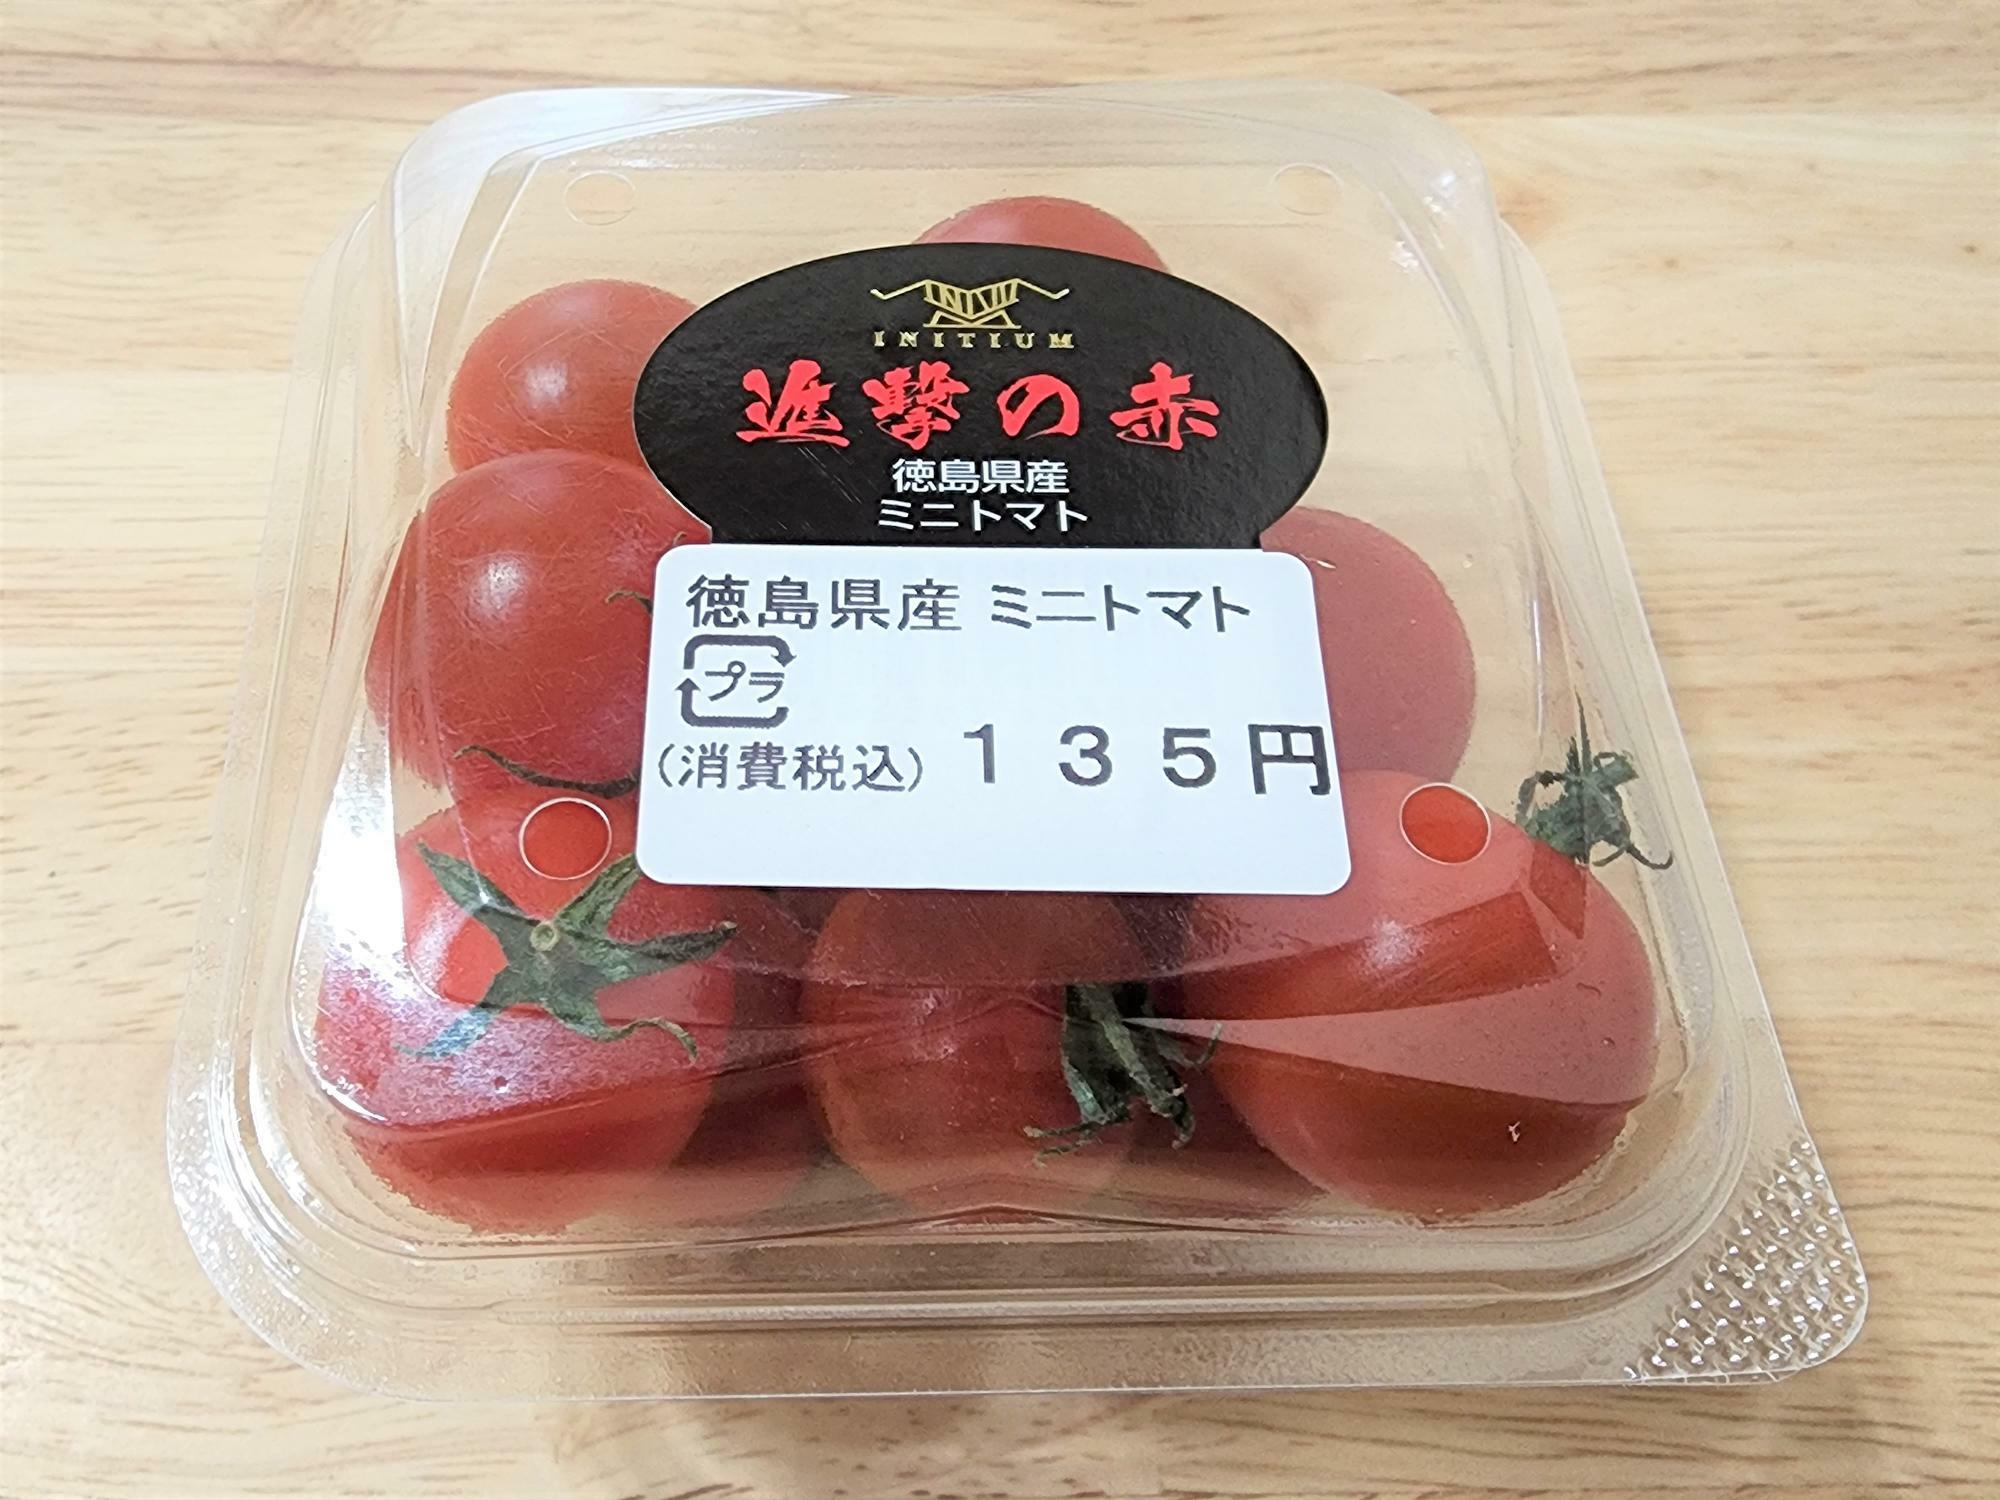 「ファミリーマート徳島北矢三町店」で販売されていた「徳島県産 ミニトマト」。